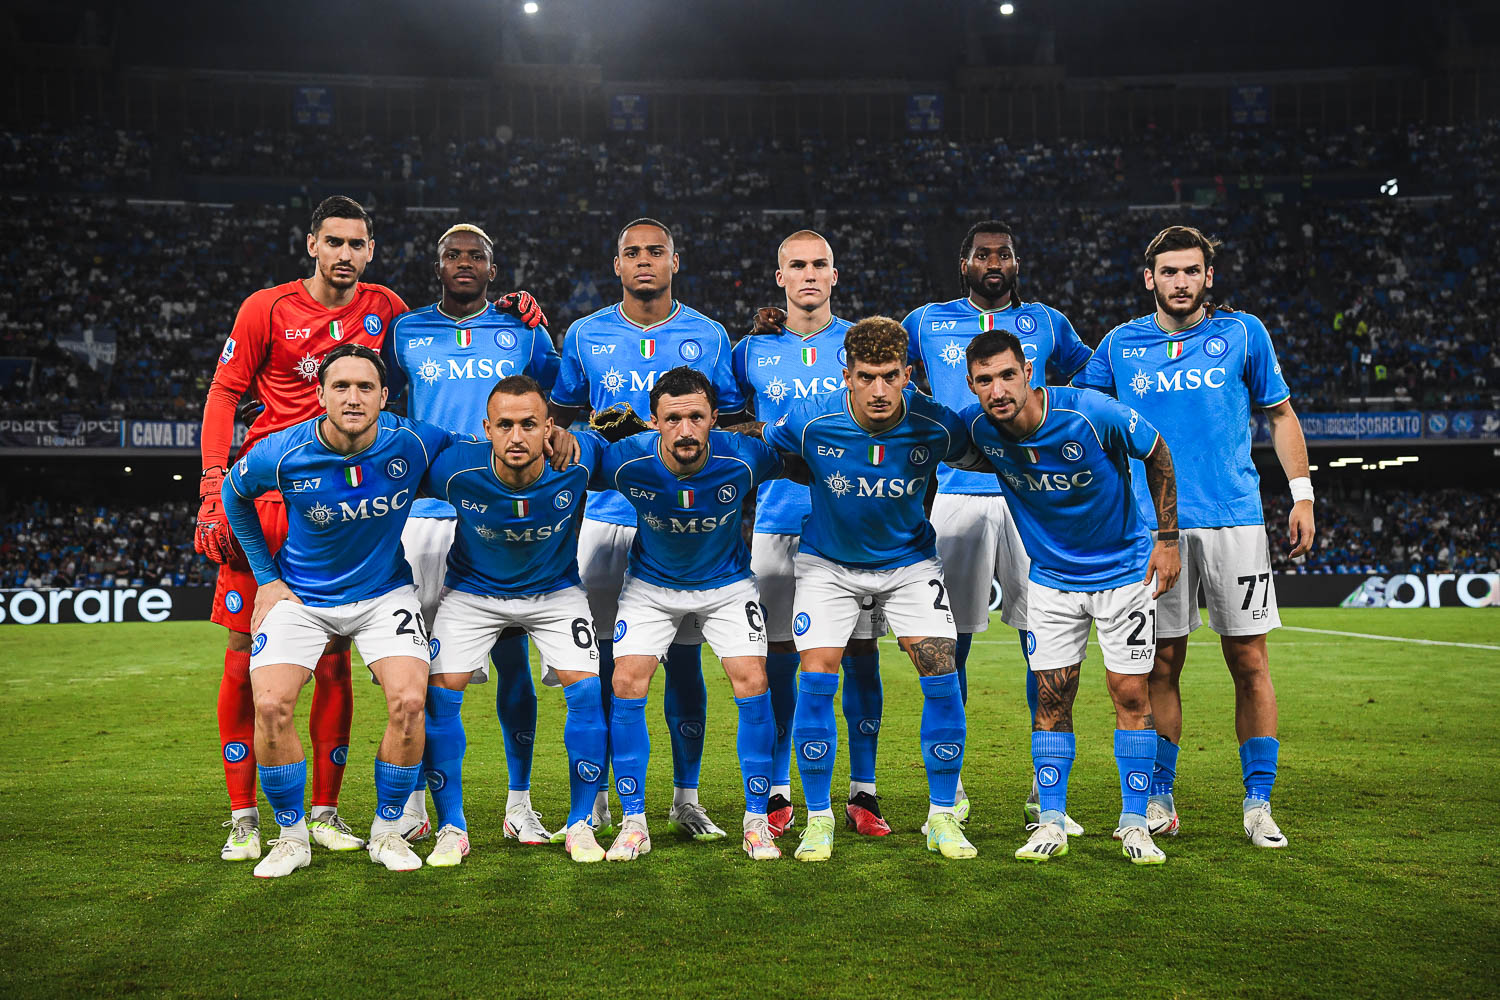 Calcio Napoli finalmente autoritario: 4 1 all’Udinese